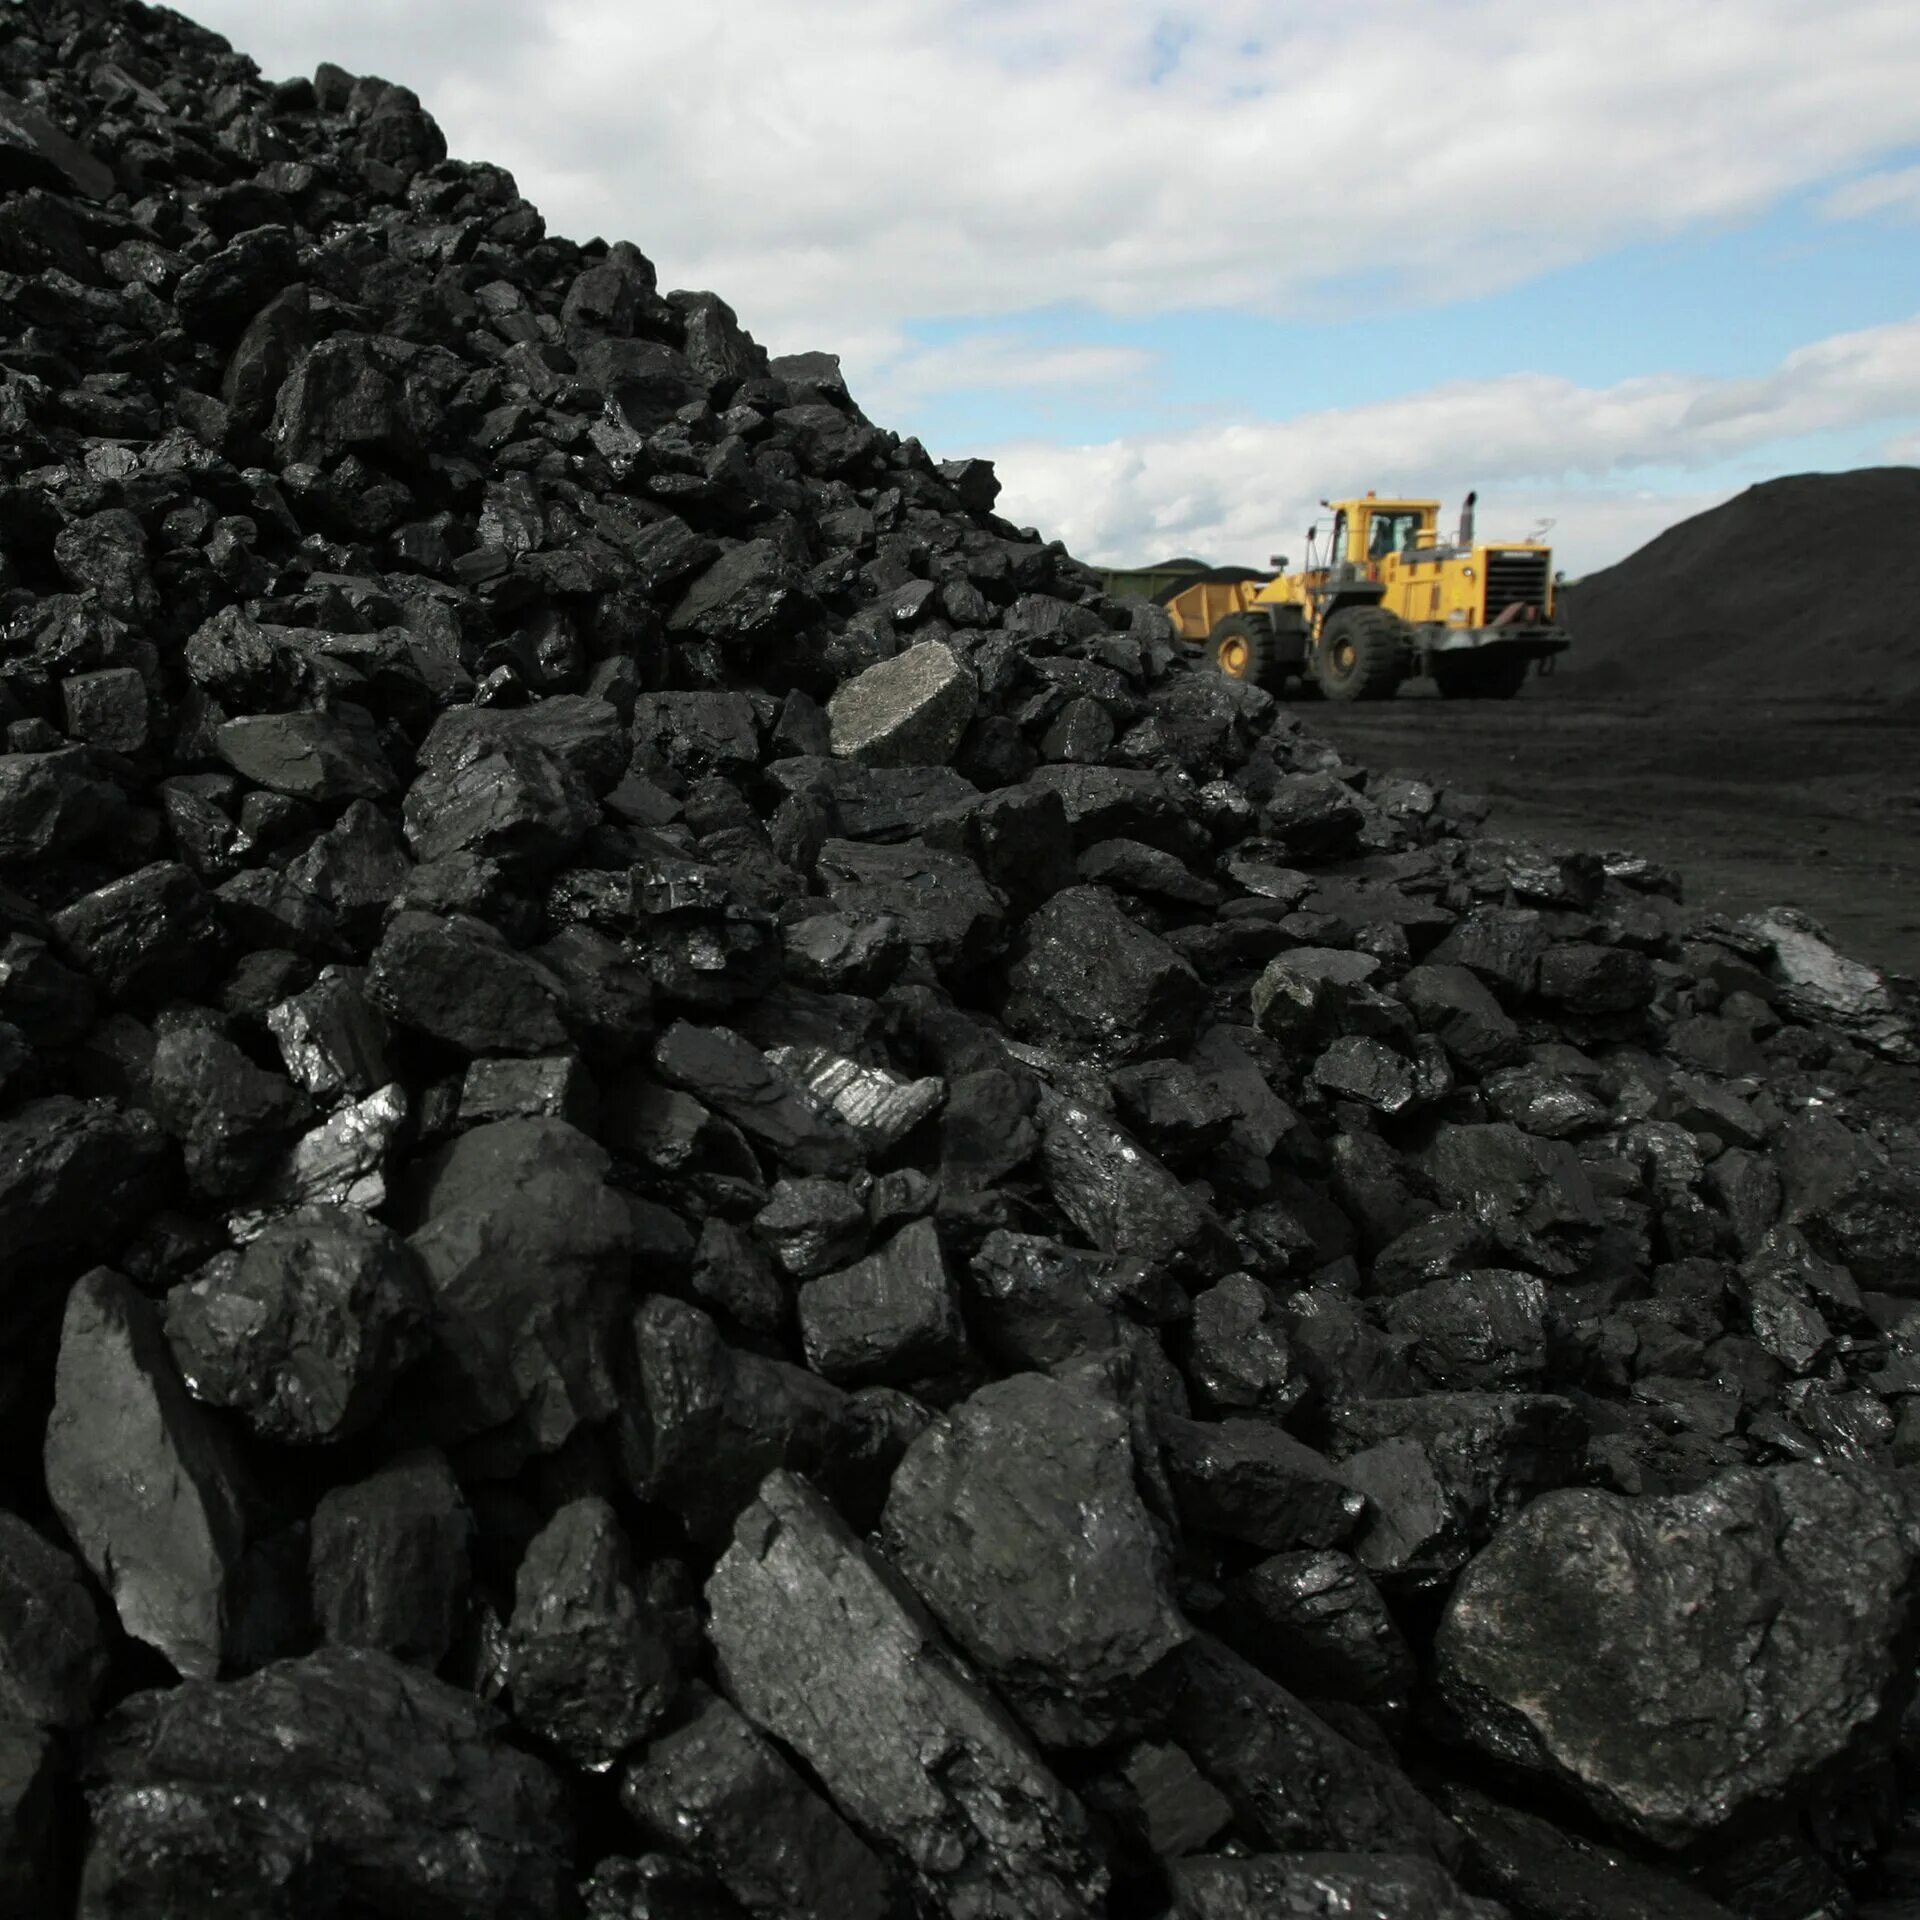 Угля топлива велико уголь. Каменный уголь ДПК. Длиннопламенный уголь. Уголь марки д - длиннопламенный. Балахтинский угольный разрез.